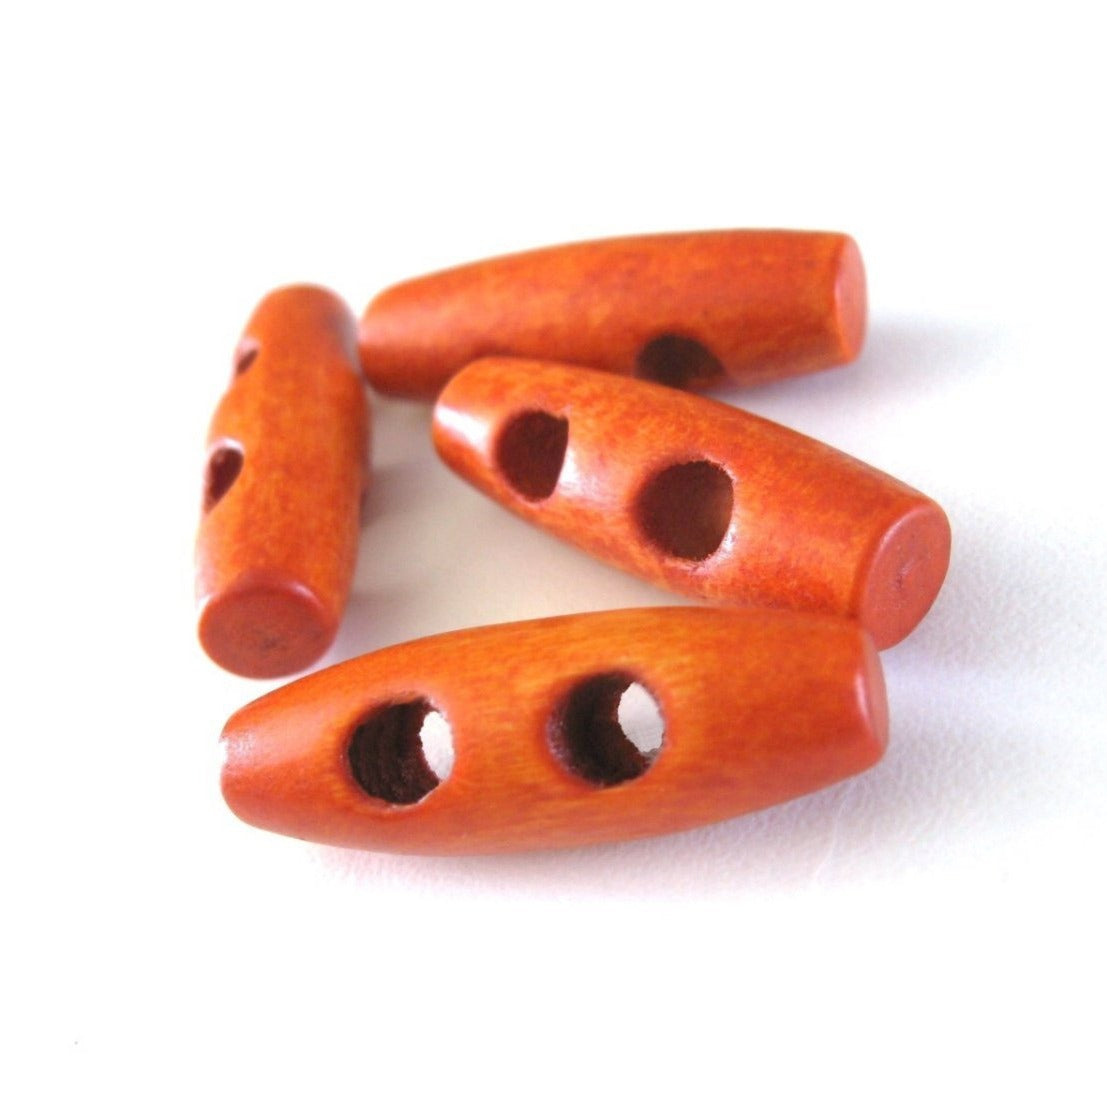 4 petits boutons de bois orange 3 x 1cm